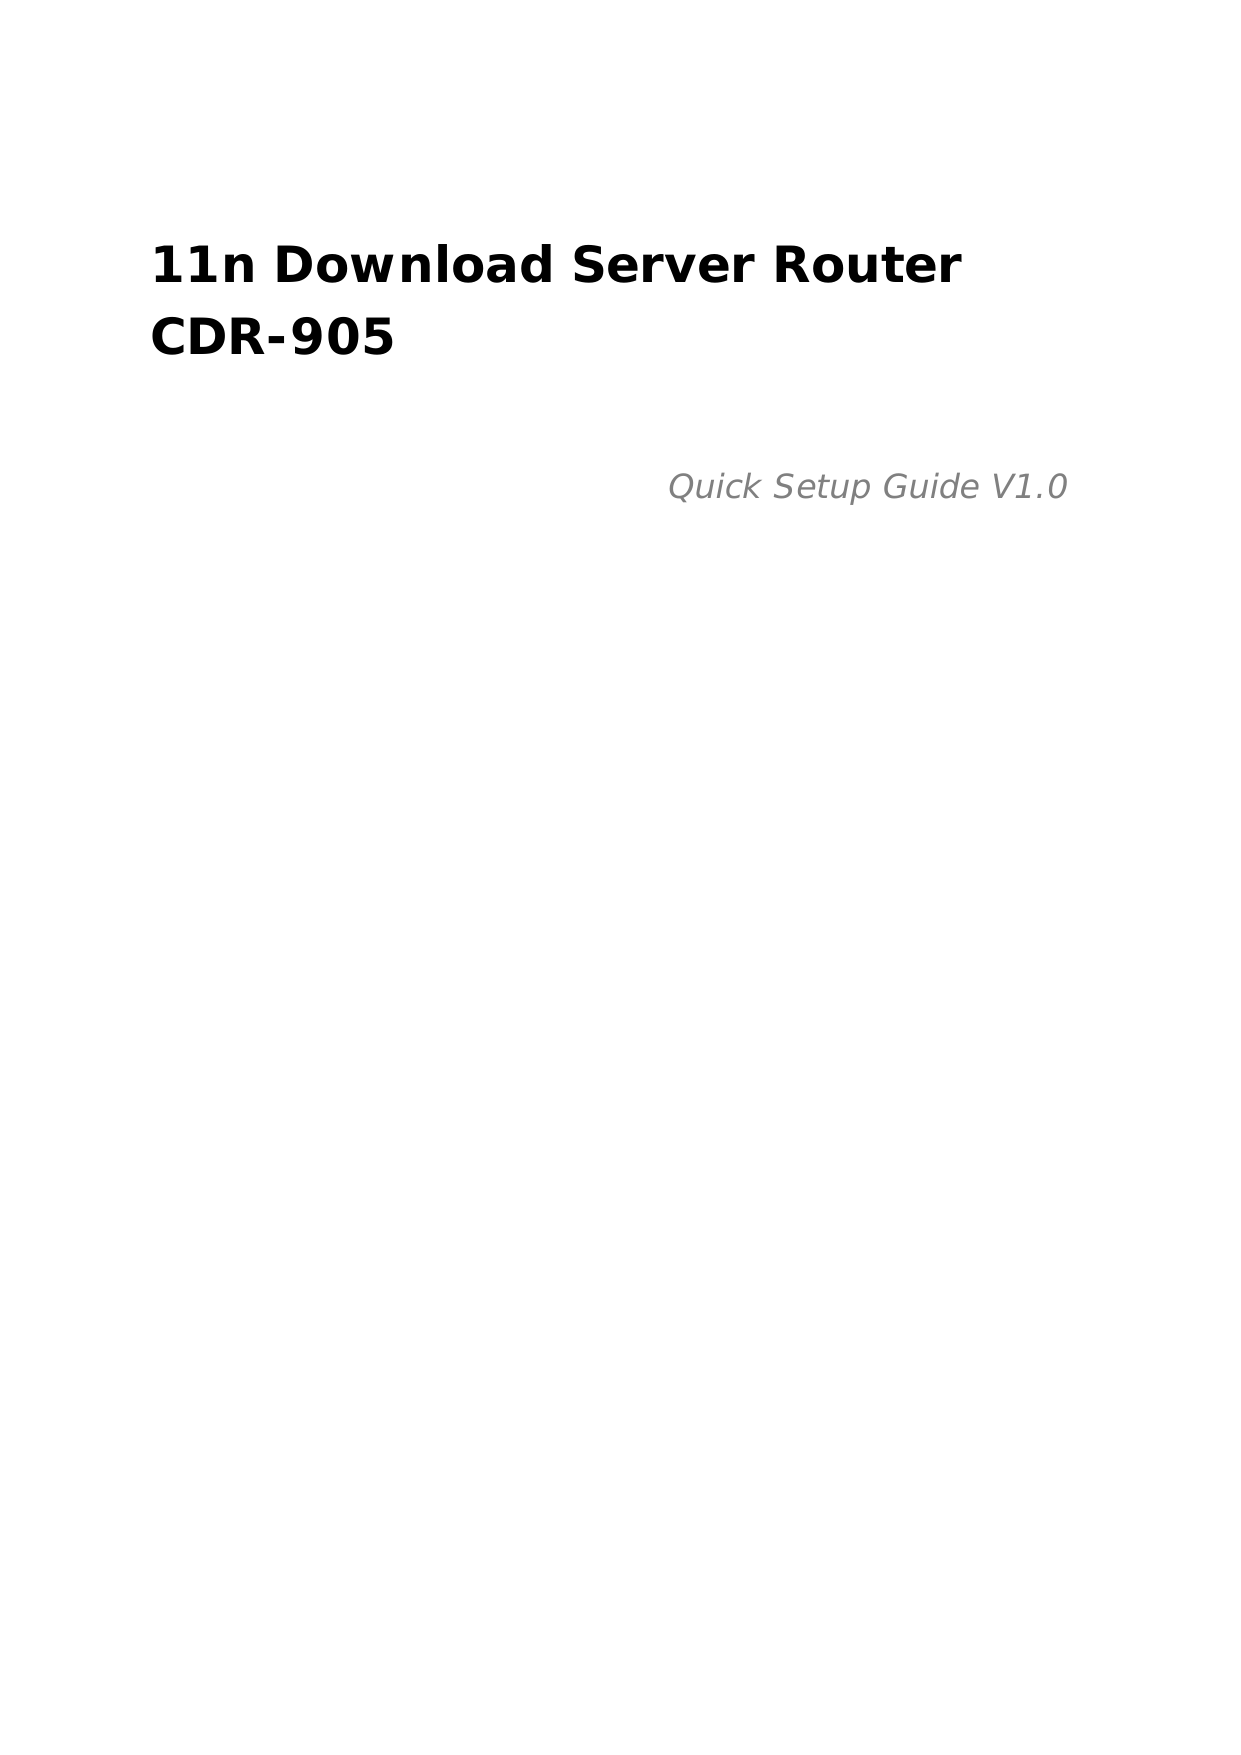  11n Download Server Router CDR-905  Quick Setup Guide V1.0                              